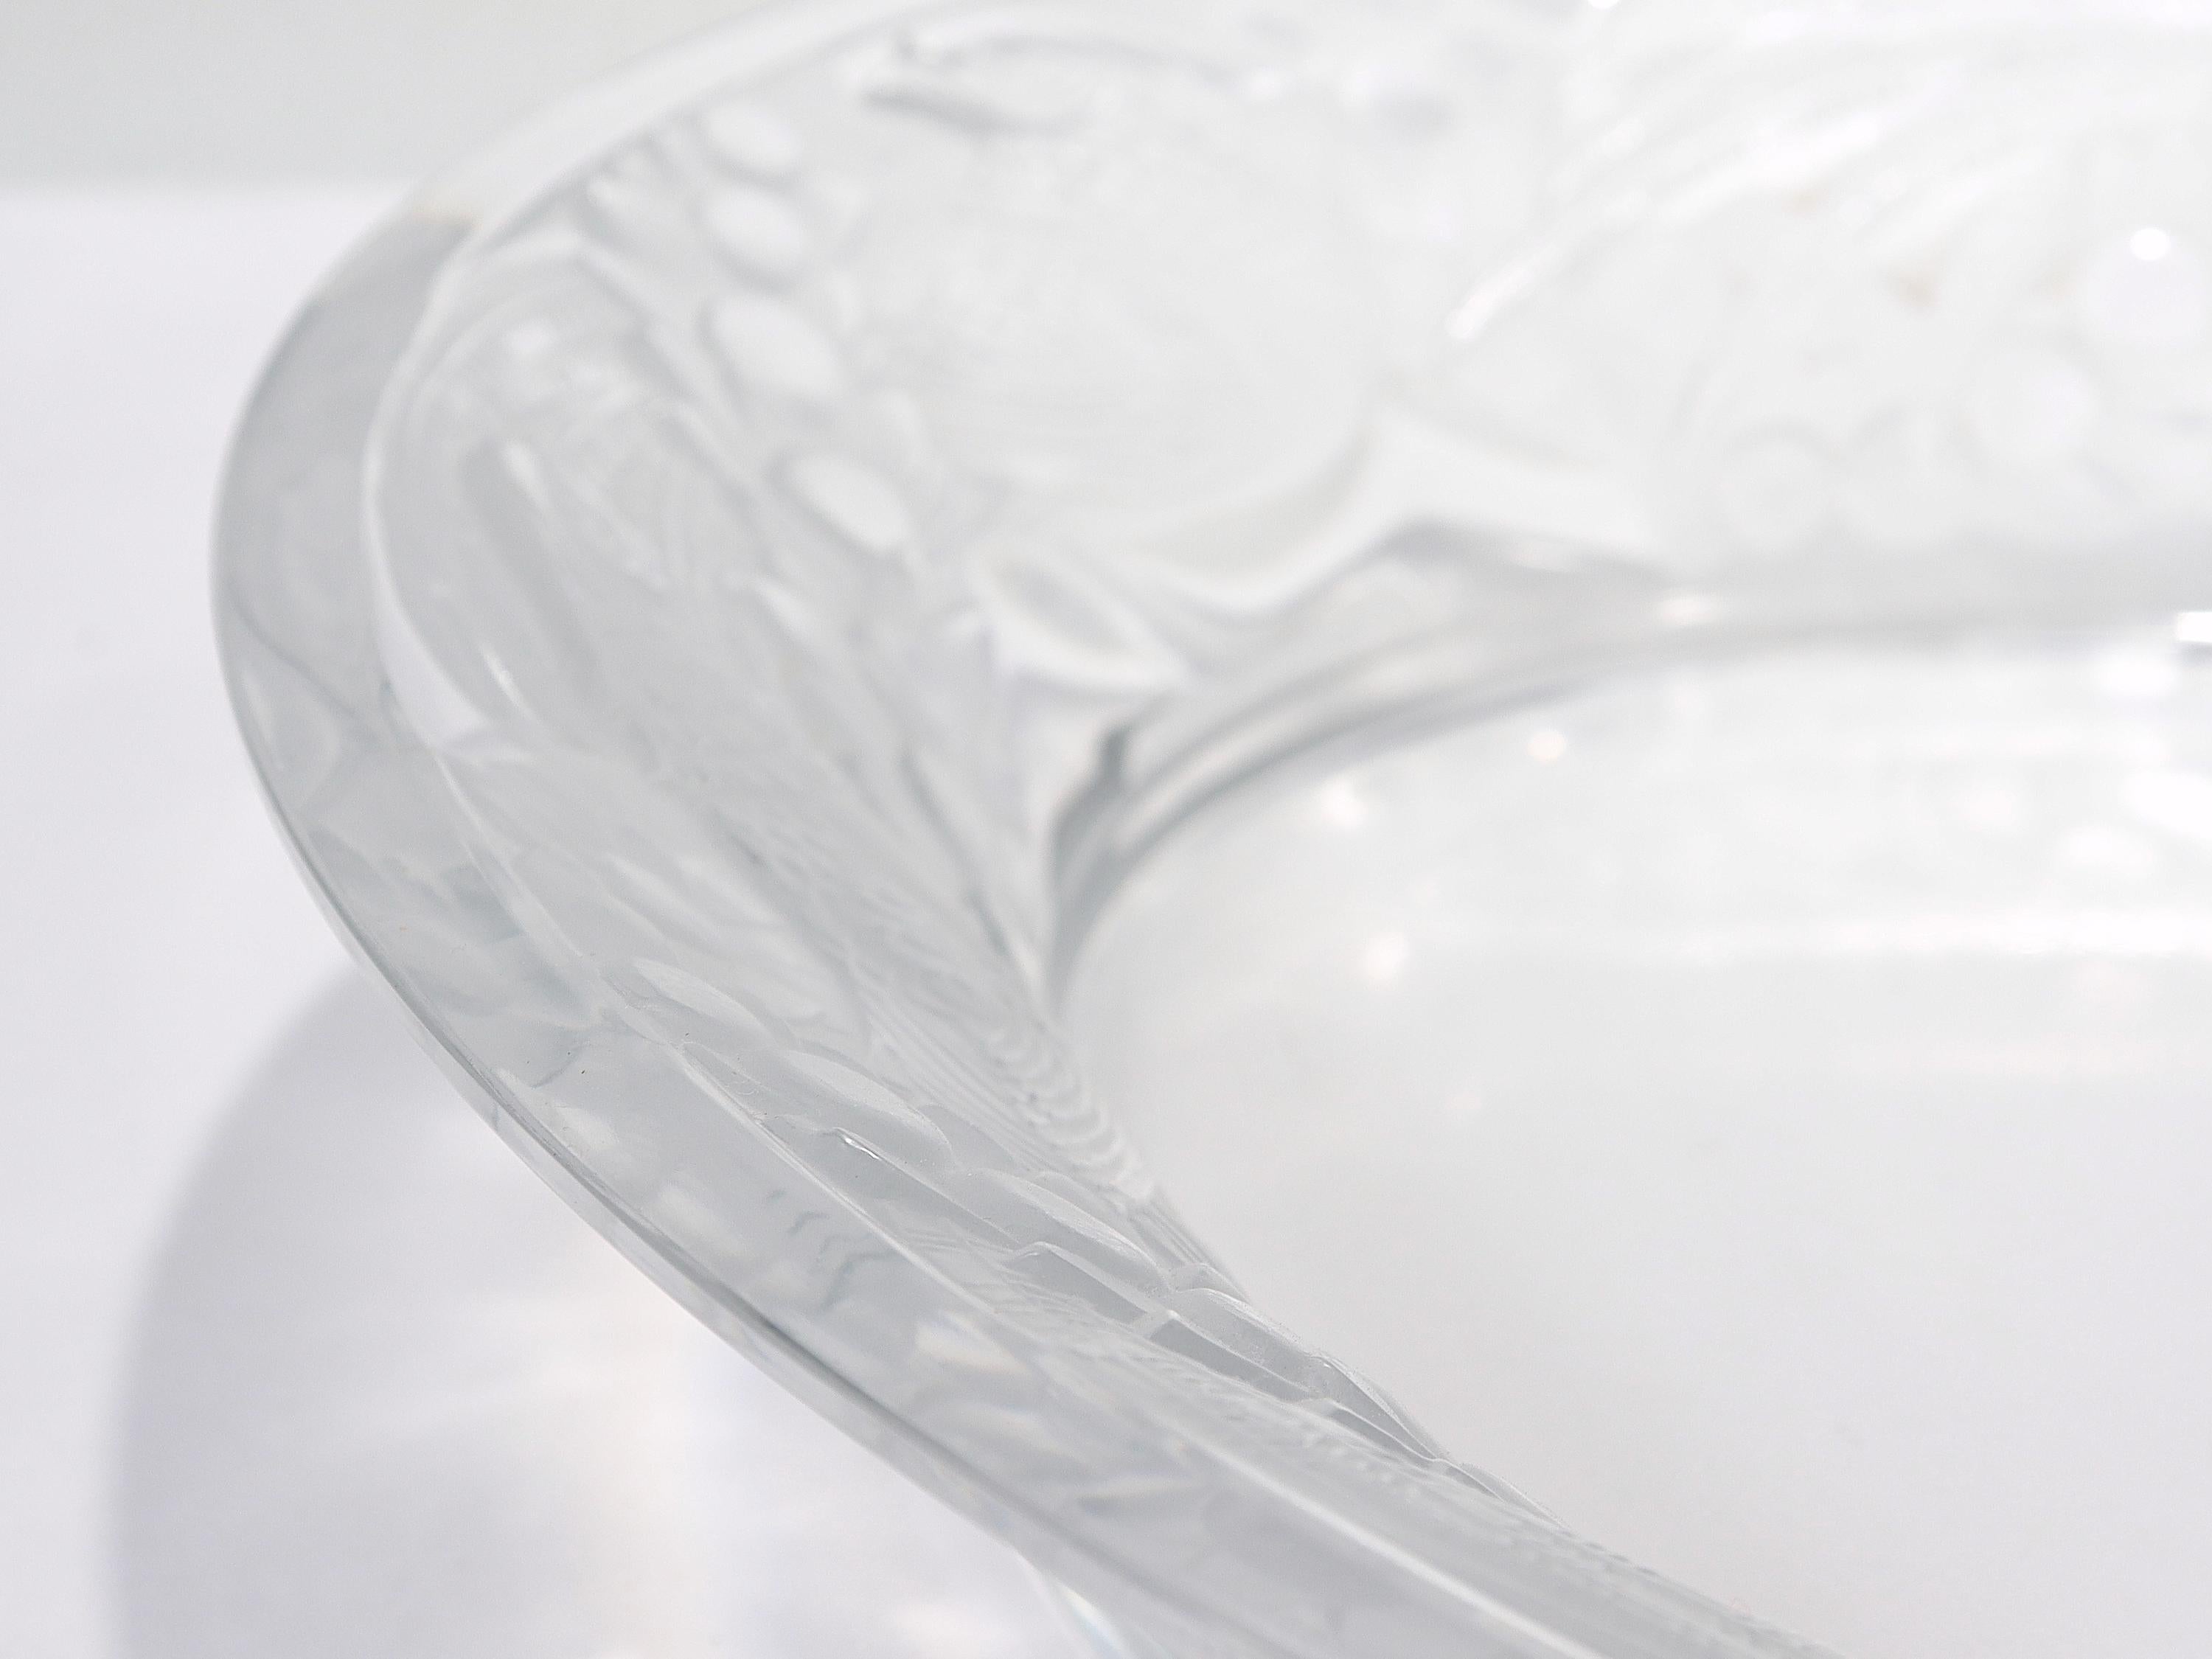 Antique Lalique Art Glass 'Faisans' Oval Bowl with Wide Rim Decor For Sale 8